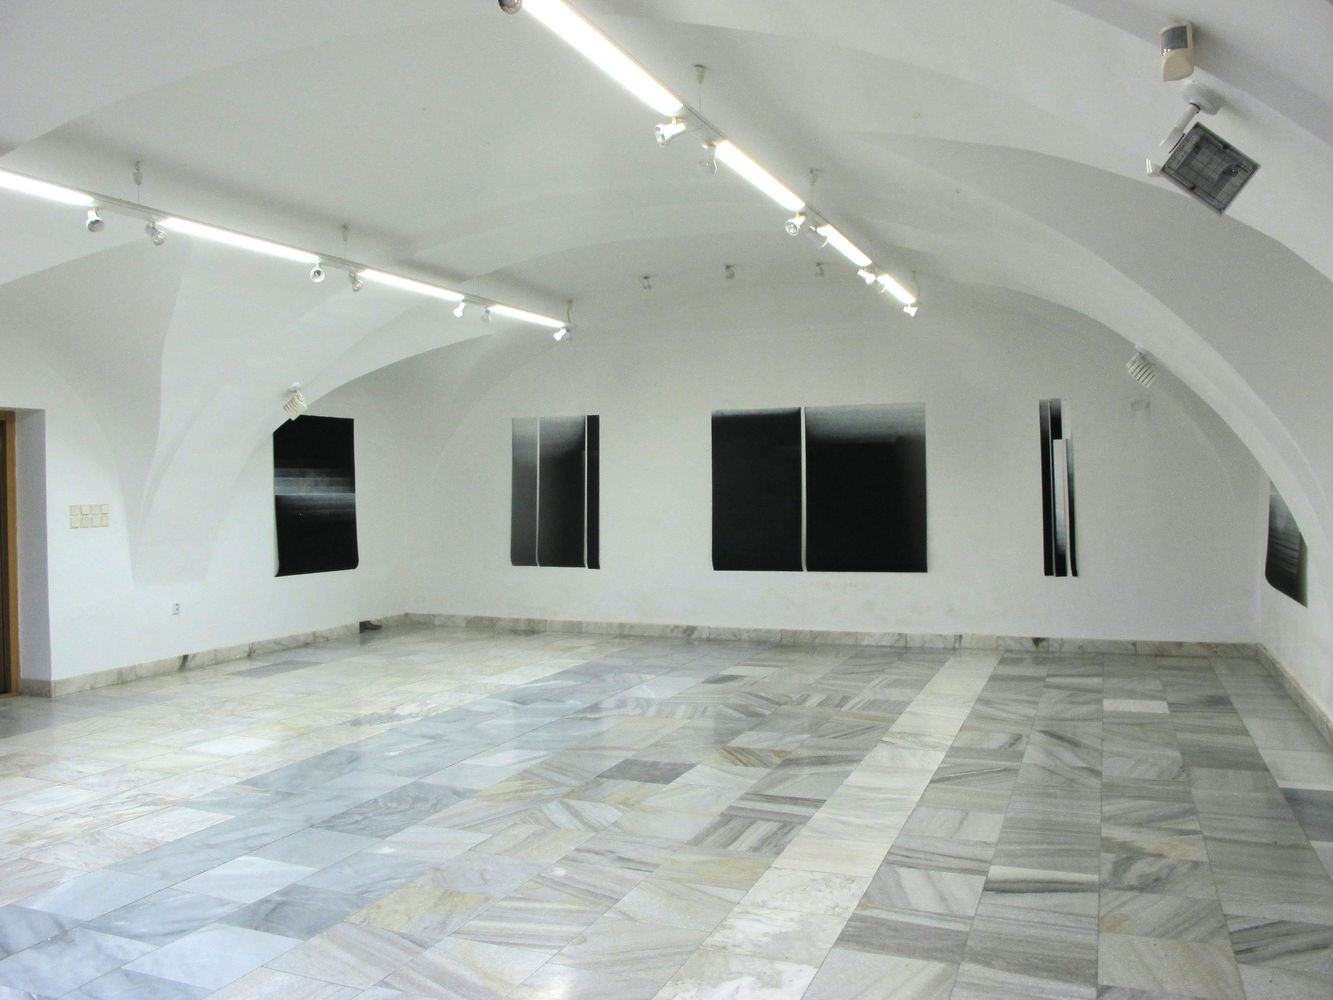 Plaché světlo, Galerie Jiřího Jílka, Šumperk, jan 2022